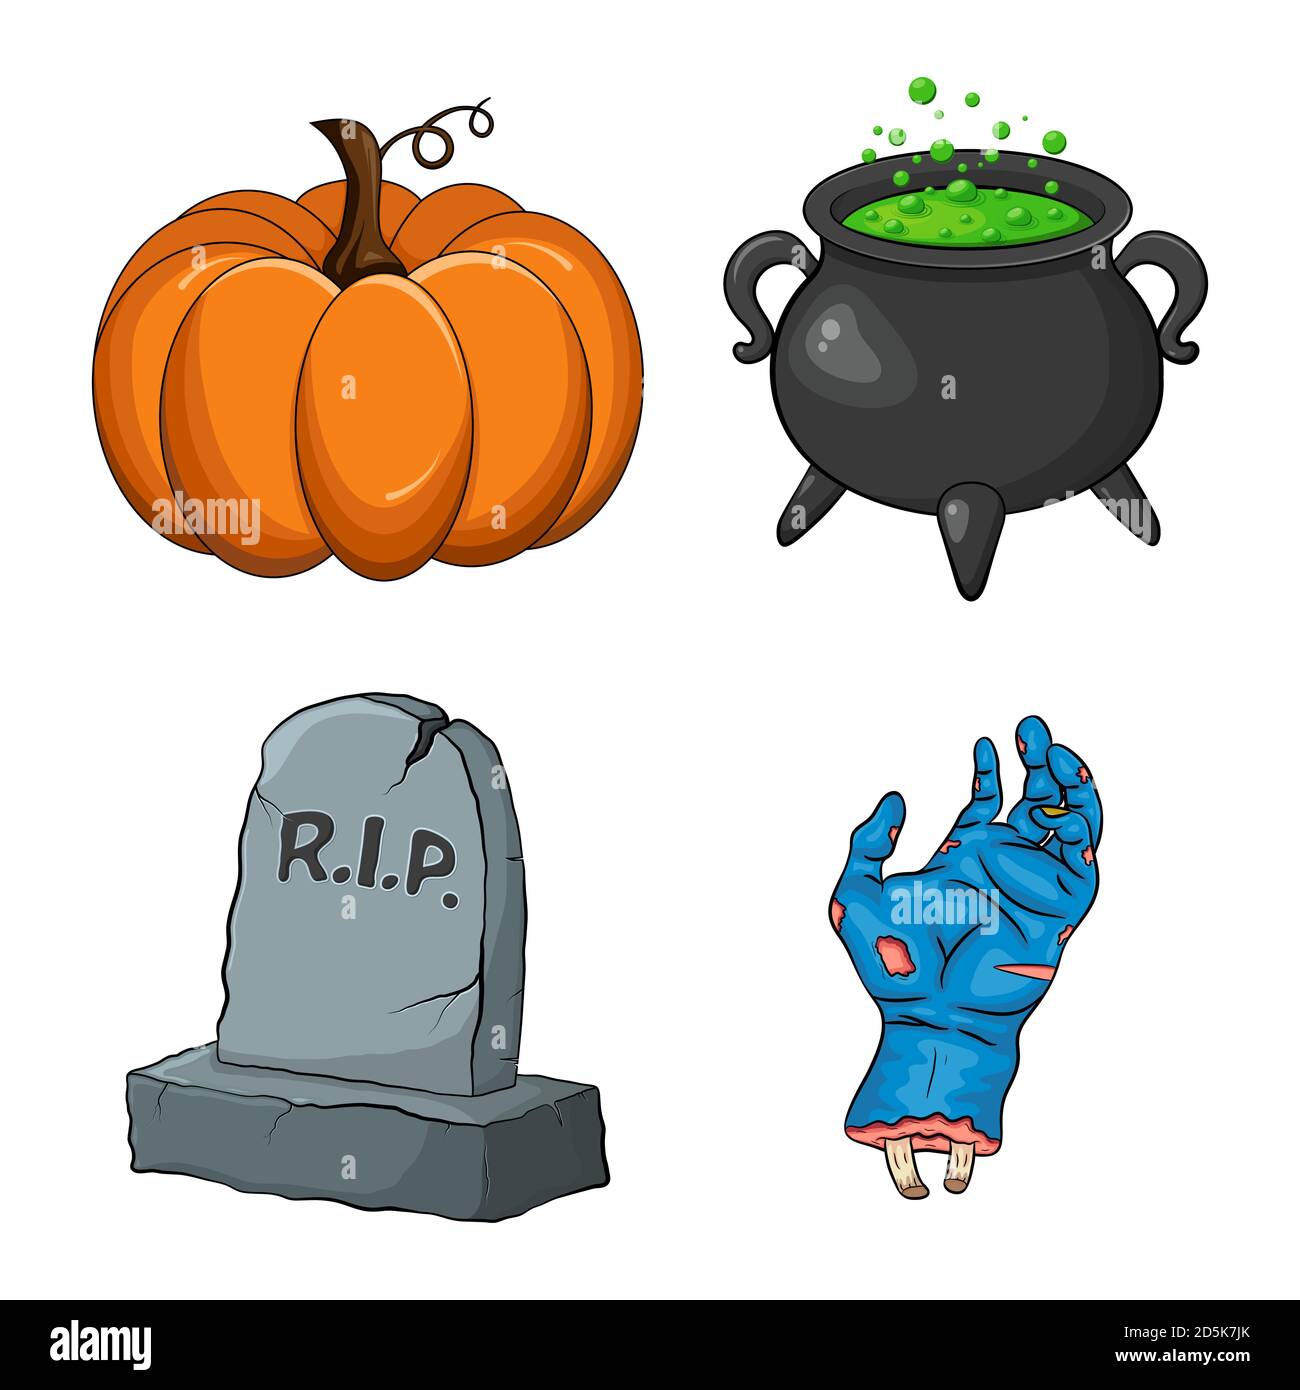 Collezione notturna di Halloween. Set di cartoni animati creepy per la festa di ottobre spooky. Disegno vettoriale di zucca, cavoldro di strega con veleno verde, tombe di tomba di lacerazione Illustrazione Vettoriale